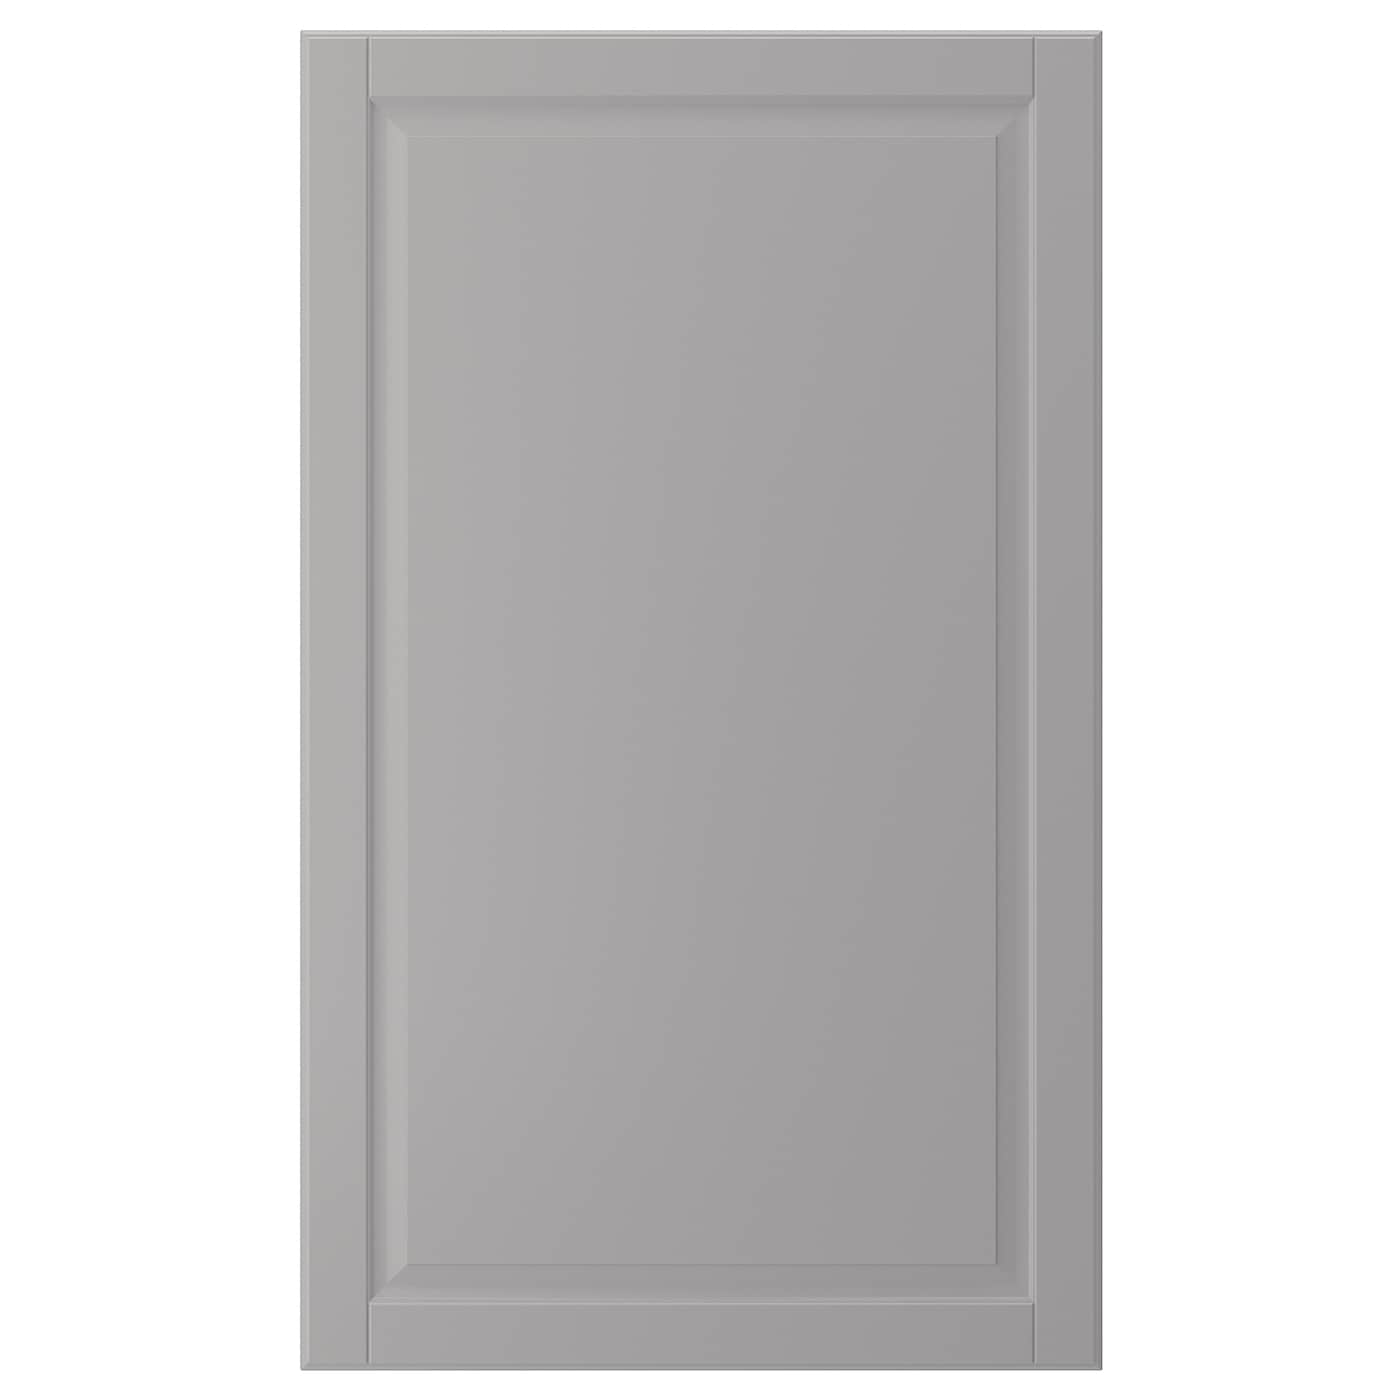 Дверца - IKEA BODBYN, 100х60 см, серый, БУДБИН ИКЕА